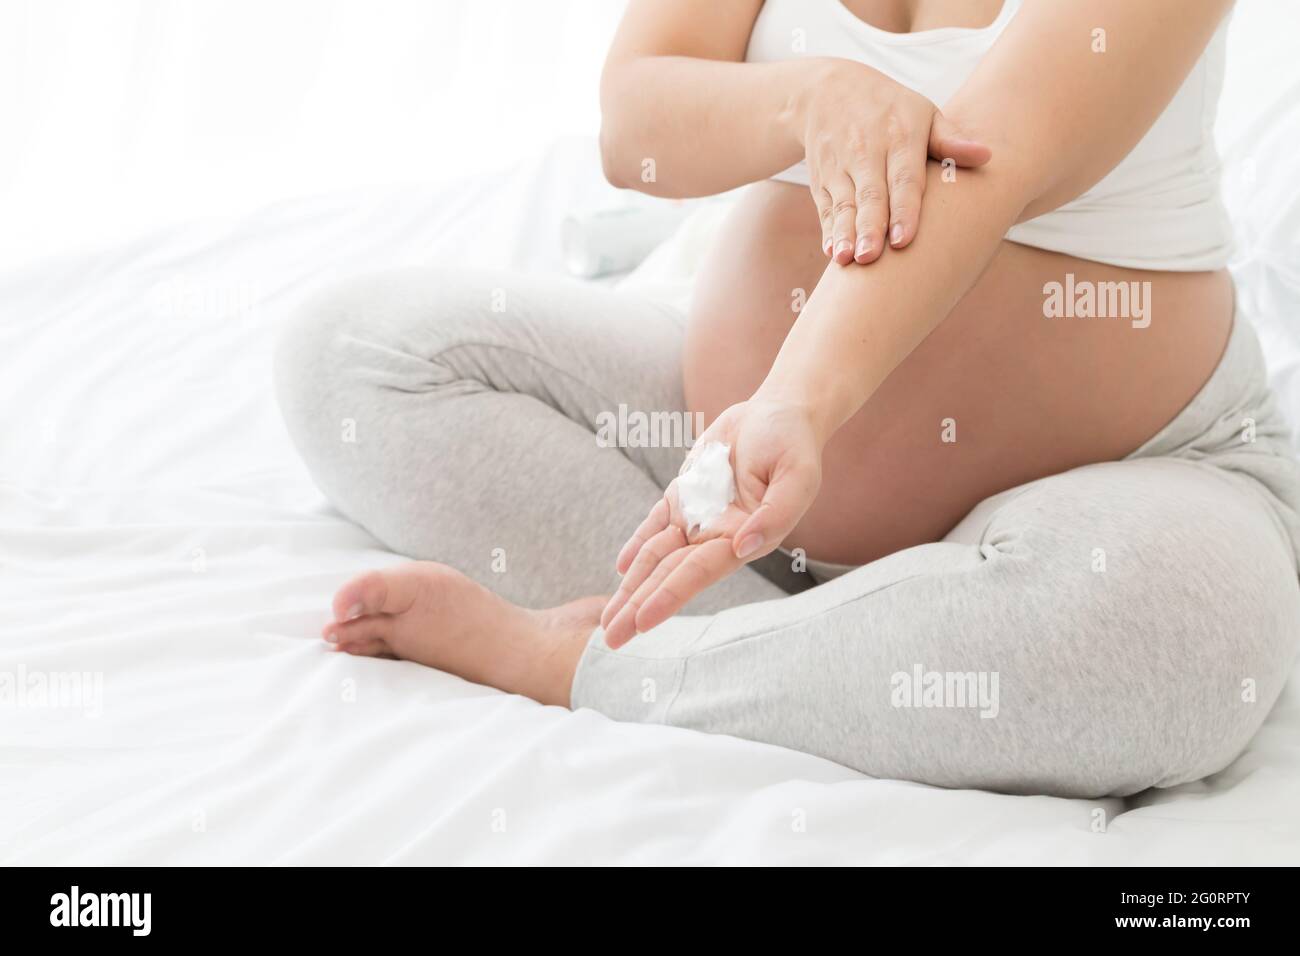 Las mujeres embarazadas aplican crema en el brazo para ayudar a hidratar la piel Foto de stock